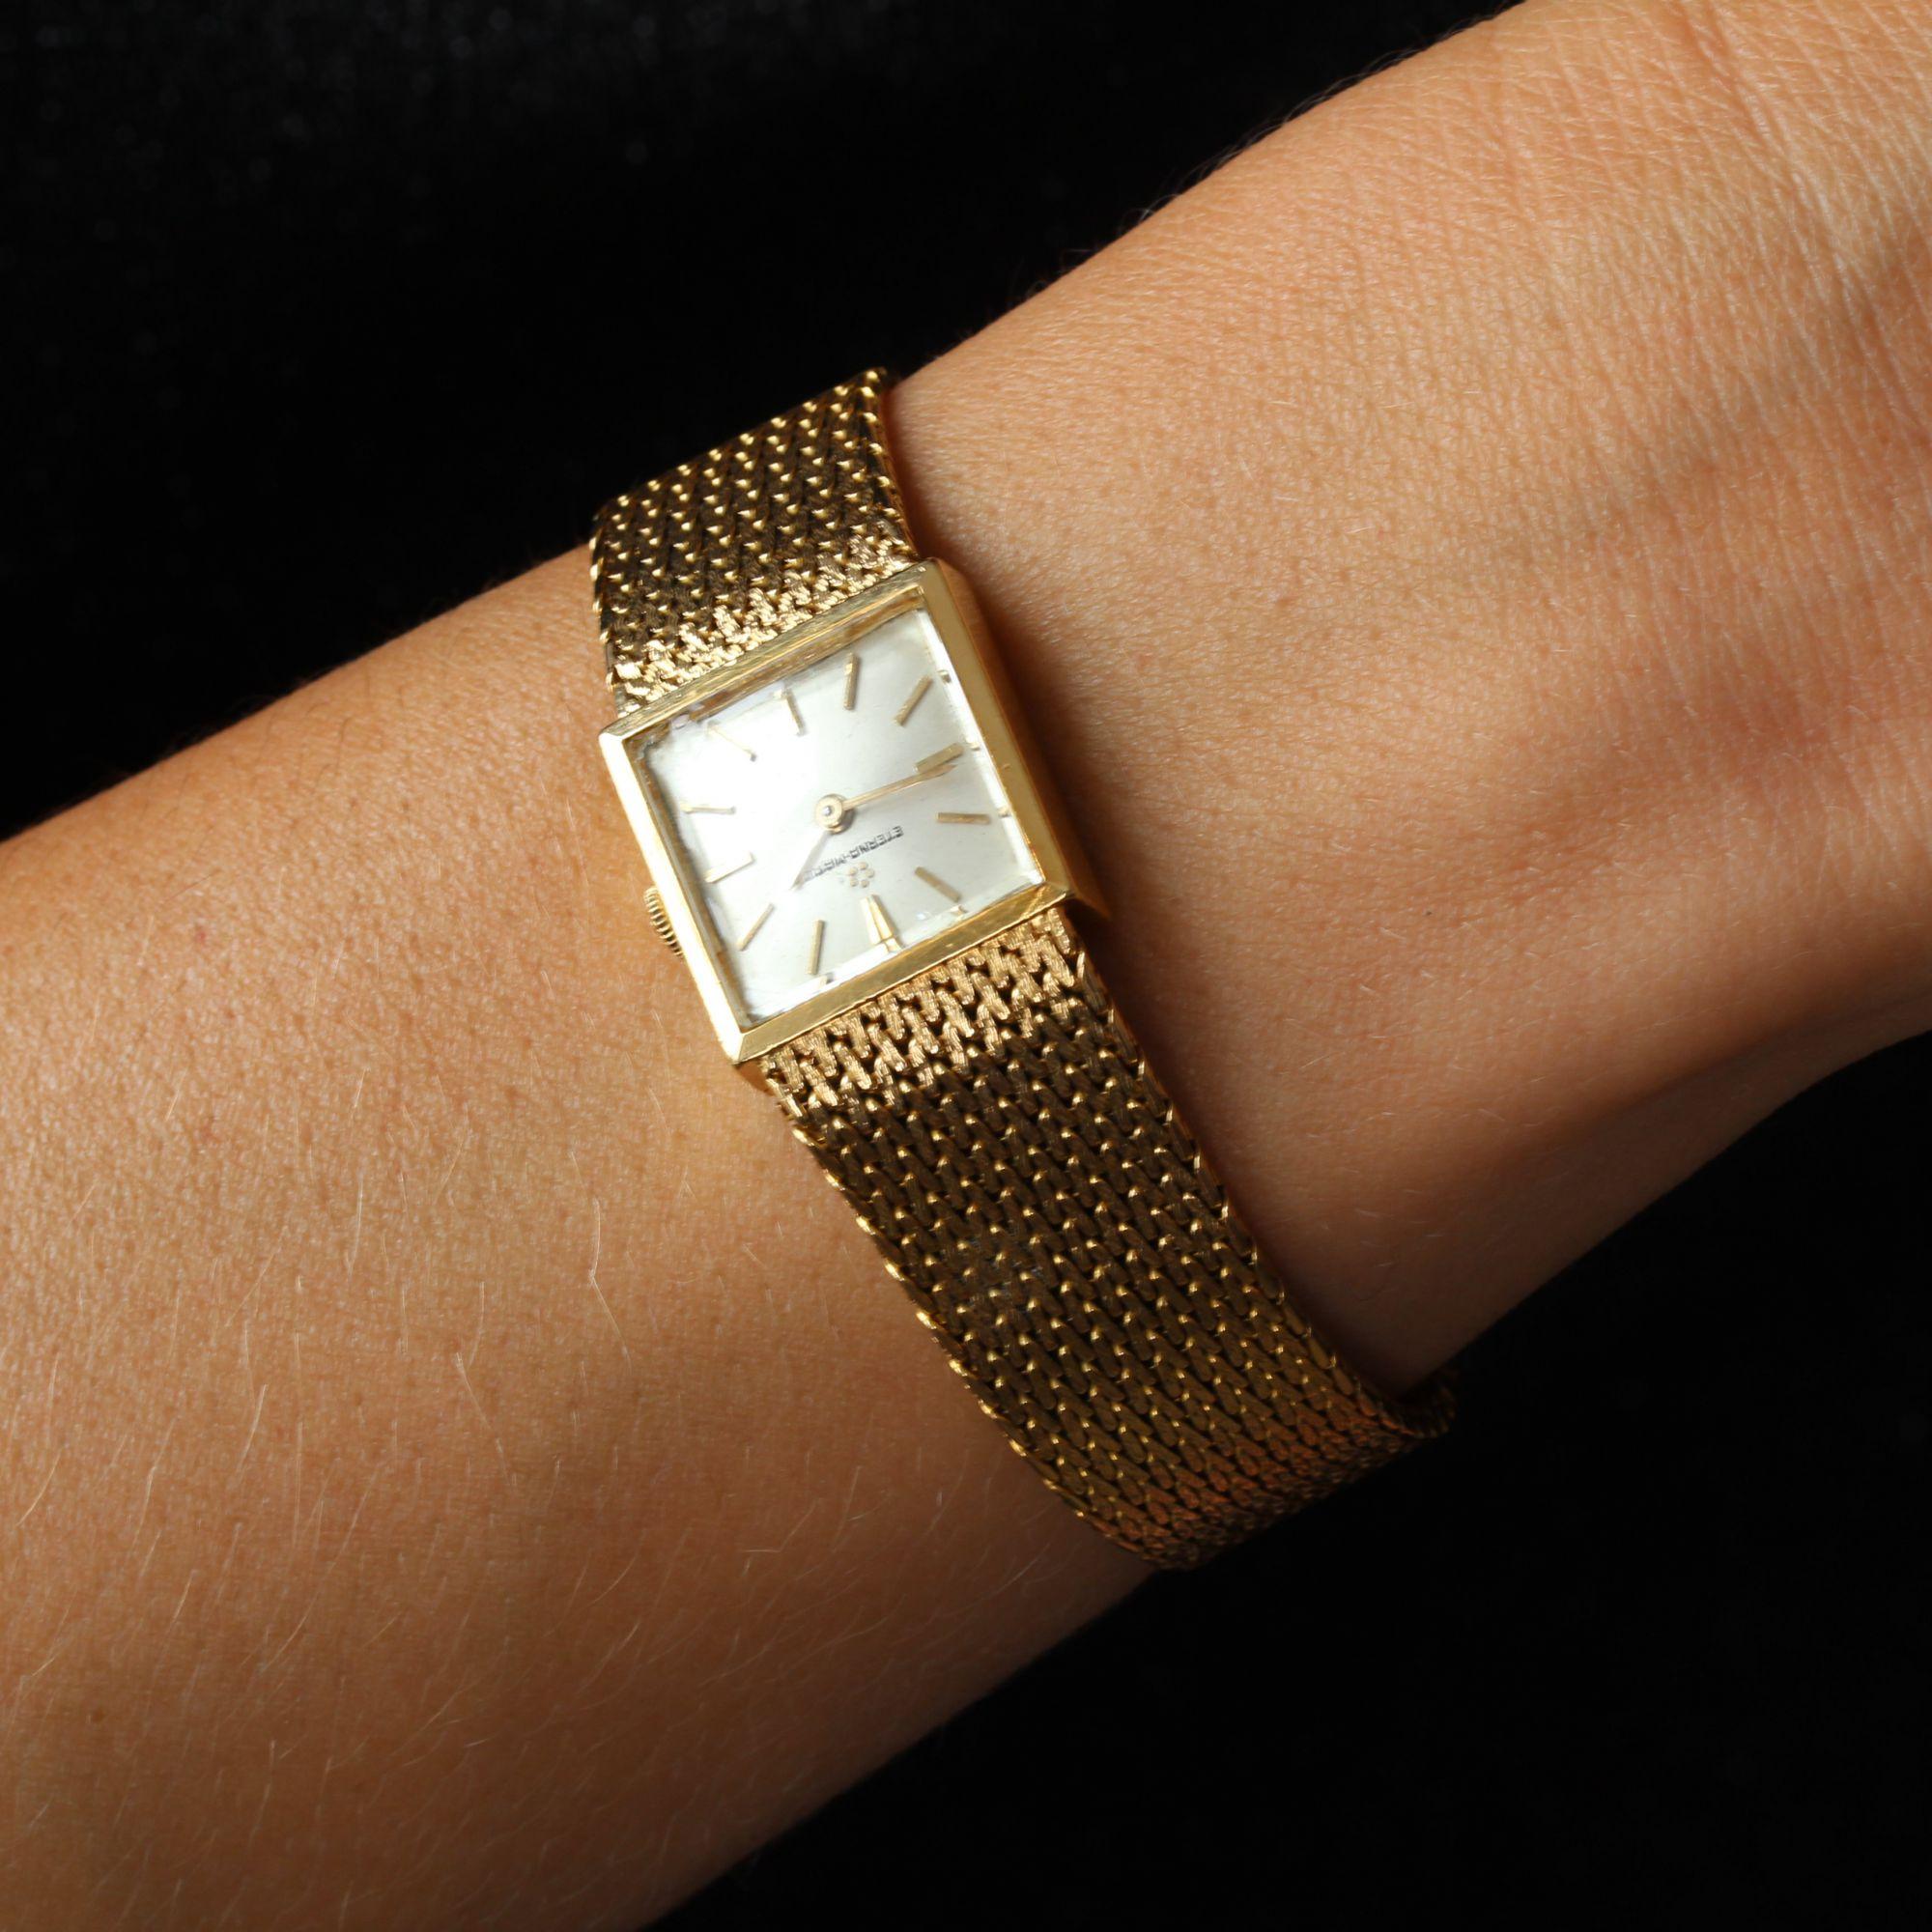 Eterna Matic Gold - 6 For Sale on 1stDibs | eterna matic 3000 18k gold watch,  ساعات اتيرنا ذهب, eterna 18k gold watch